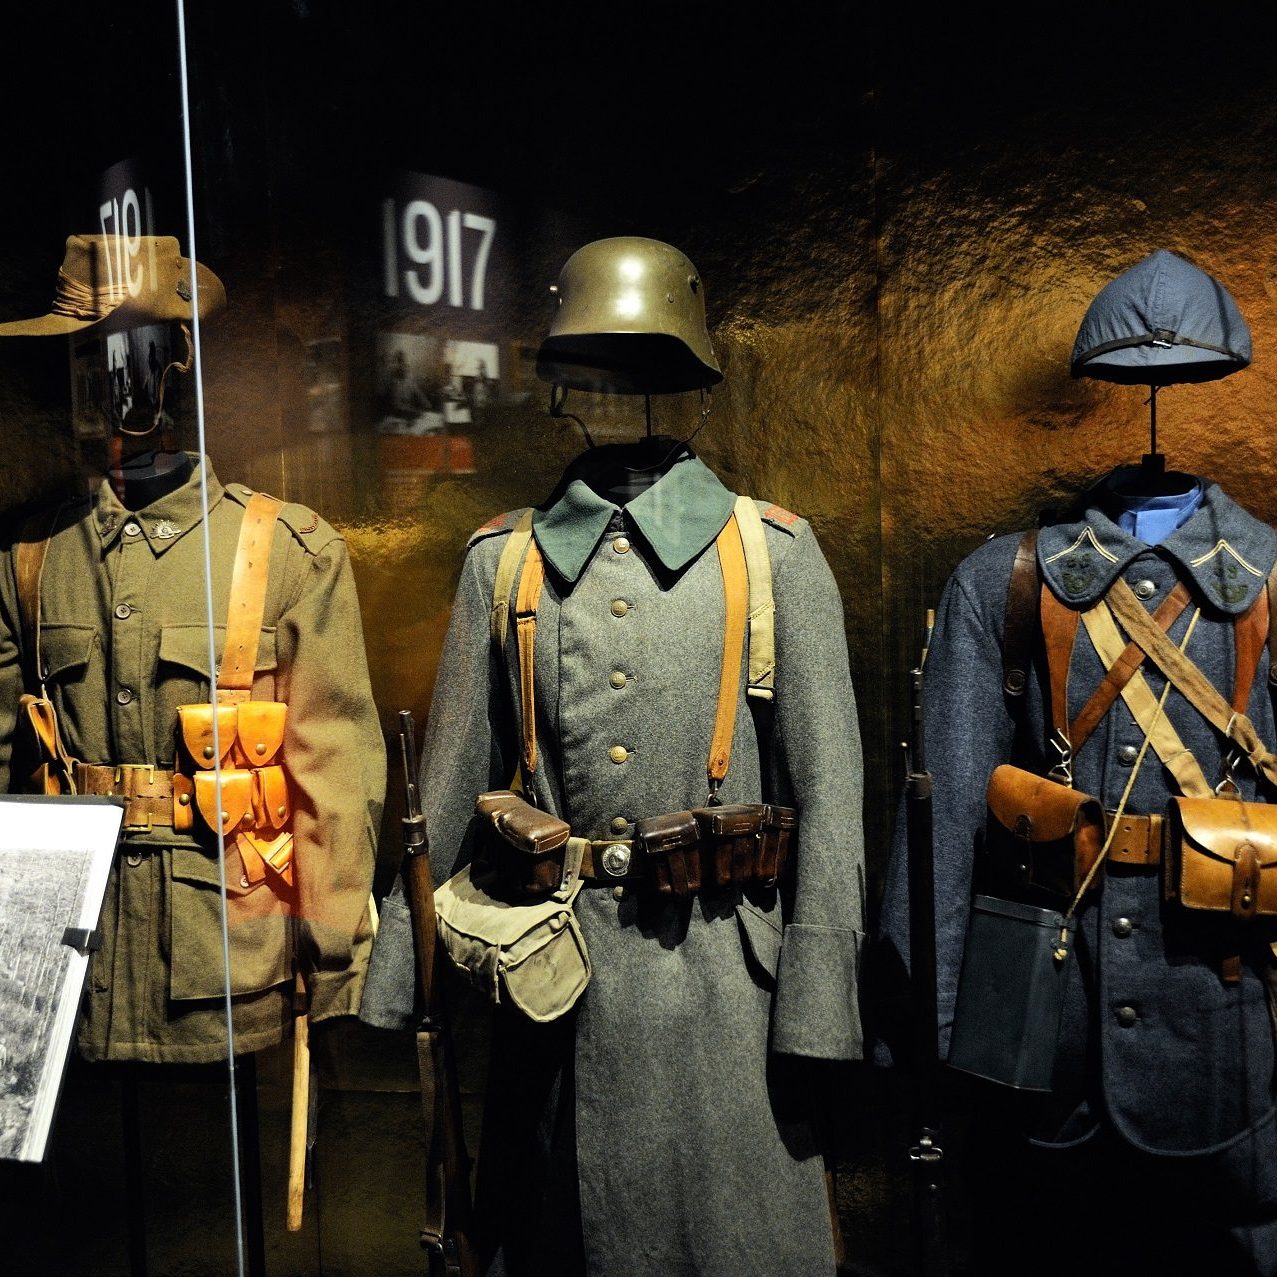 Uniformes du musée de la Grande Guerre